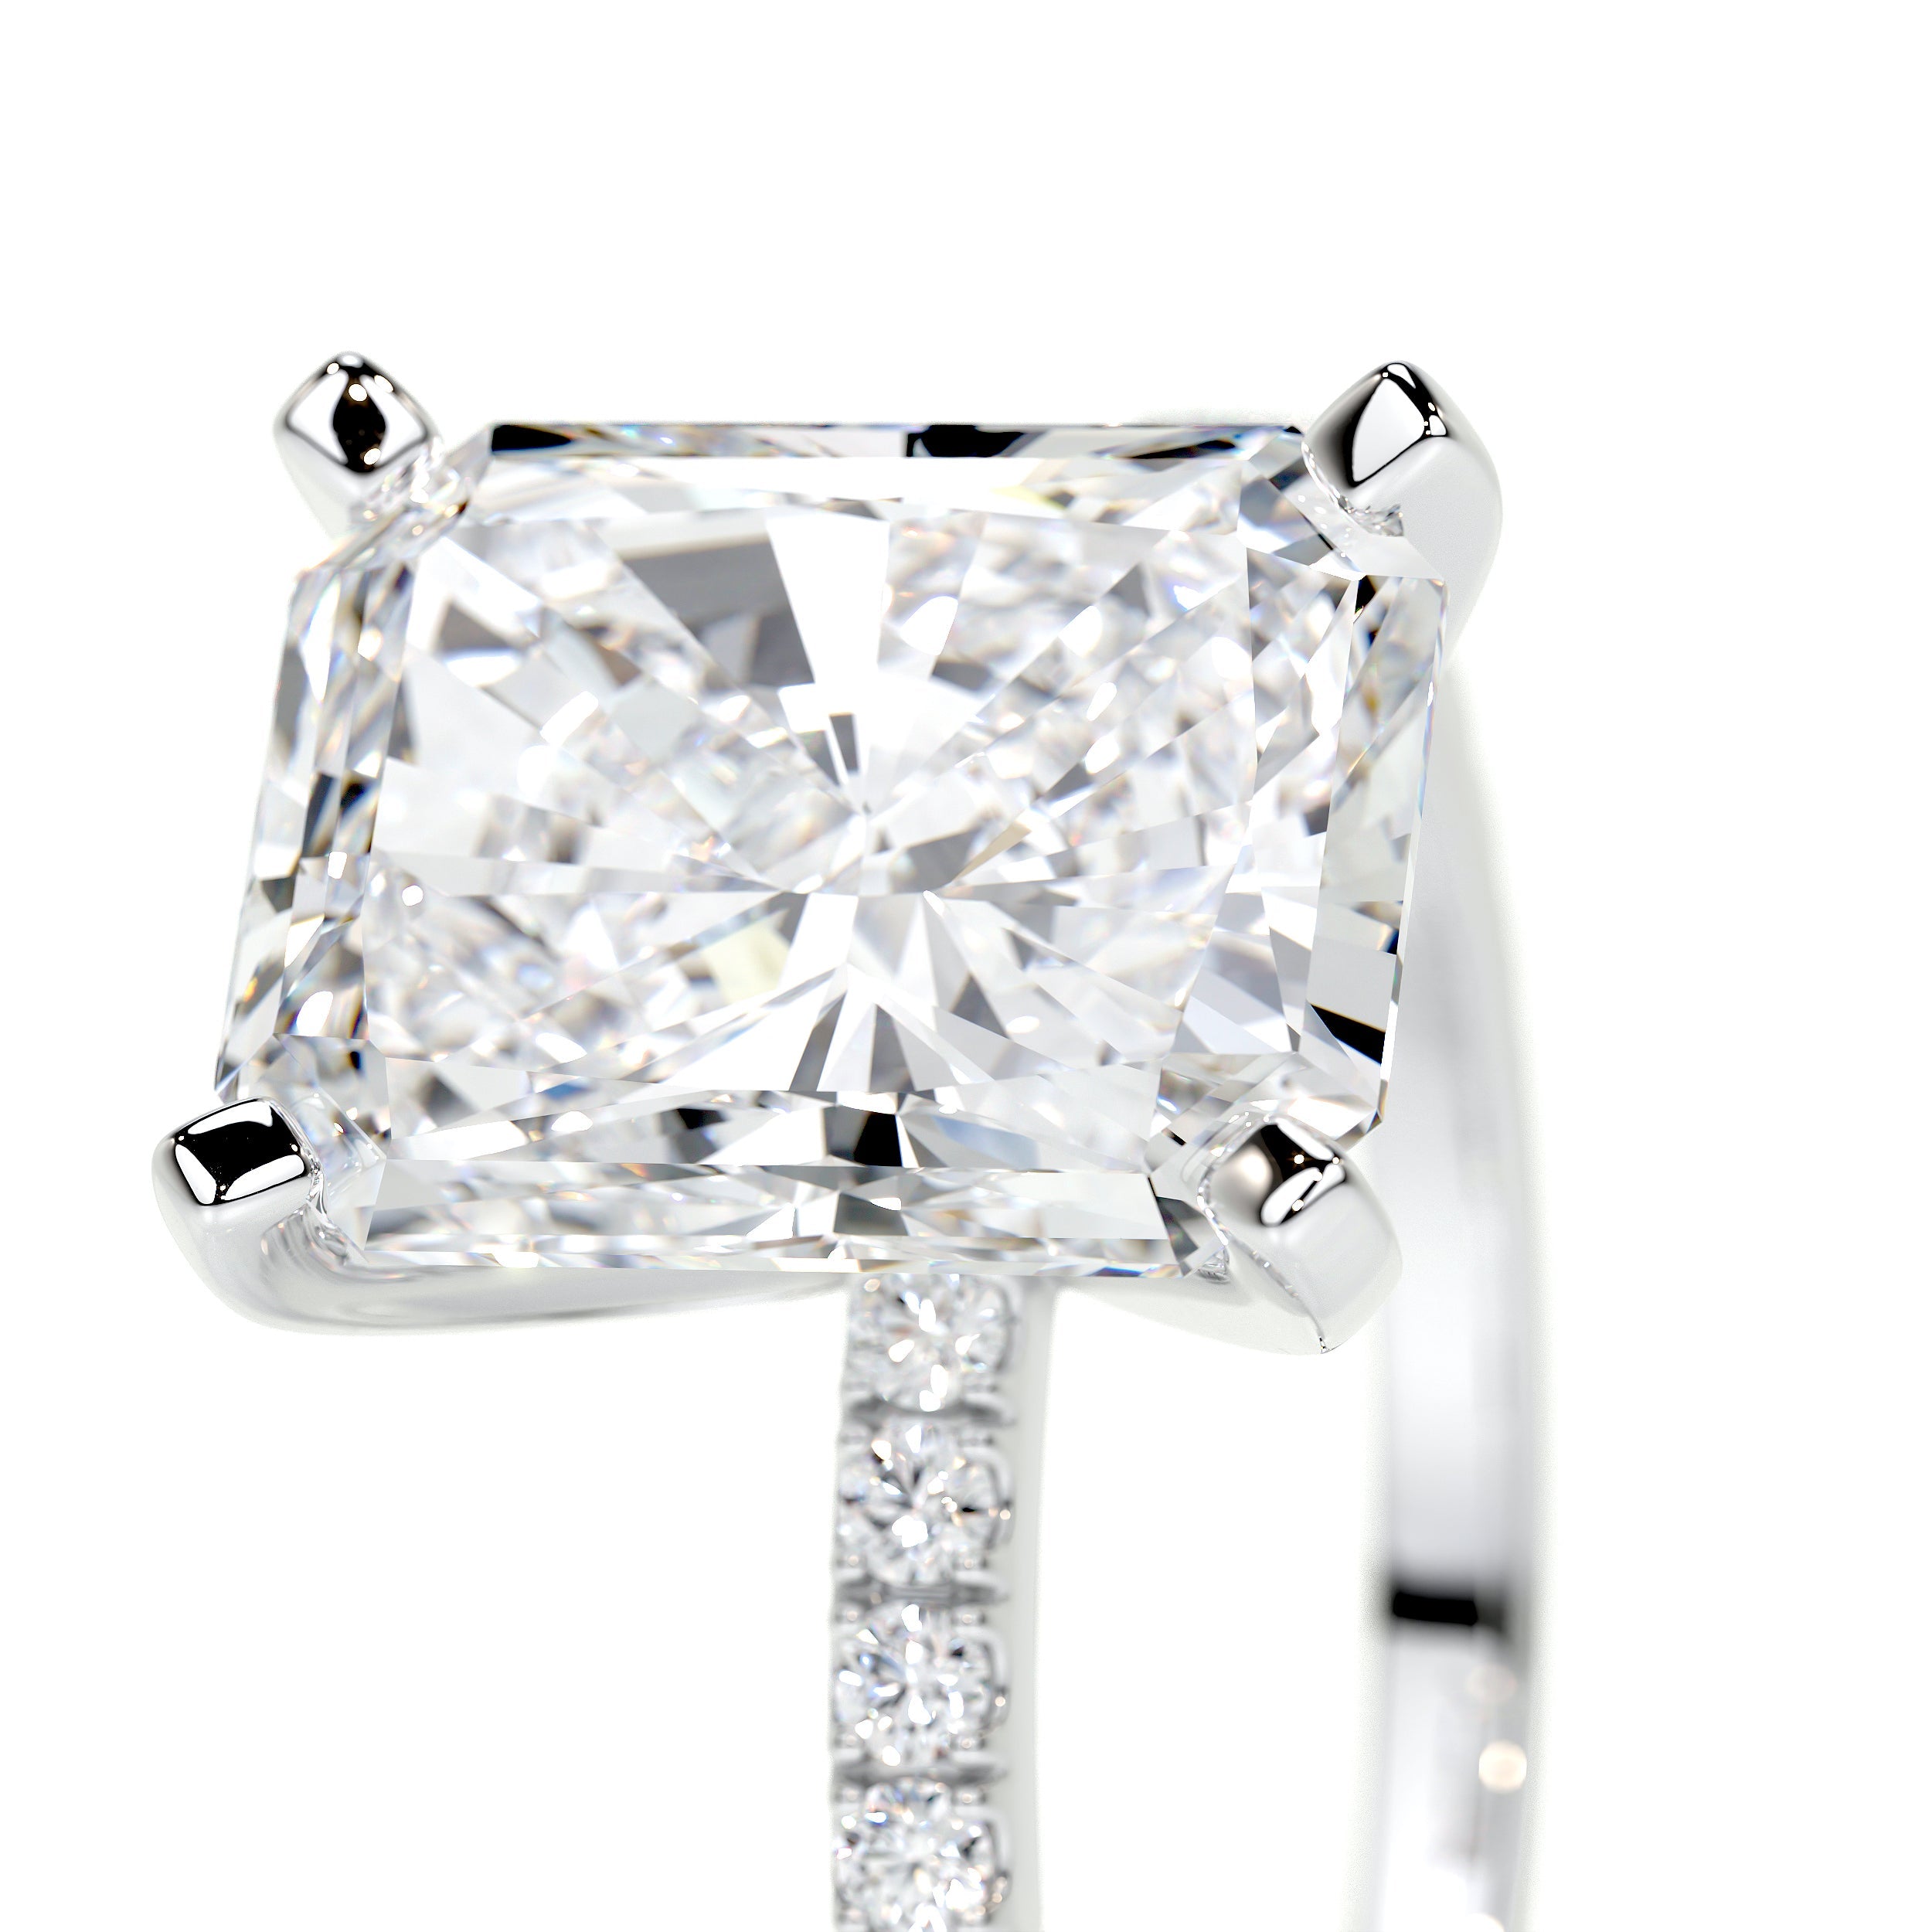 Audrey Lab Grown Diamond Ring   (3.5 Carat) -18K White Gold